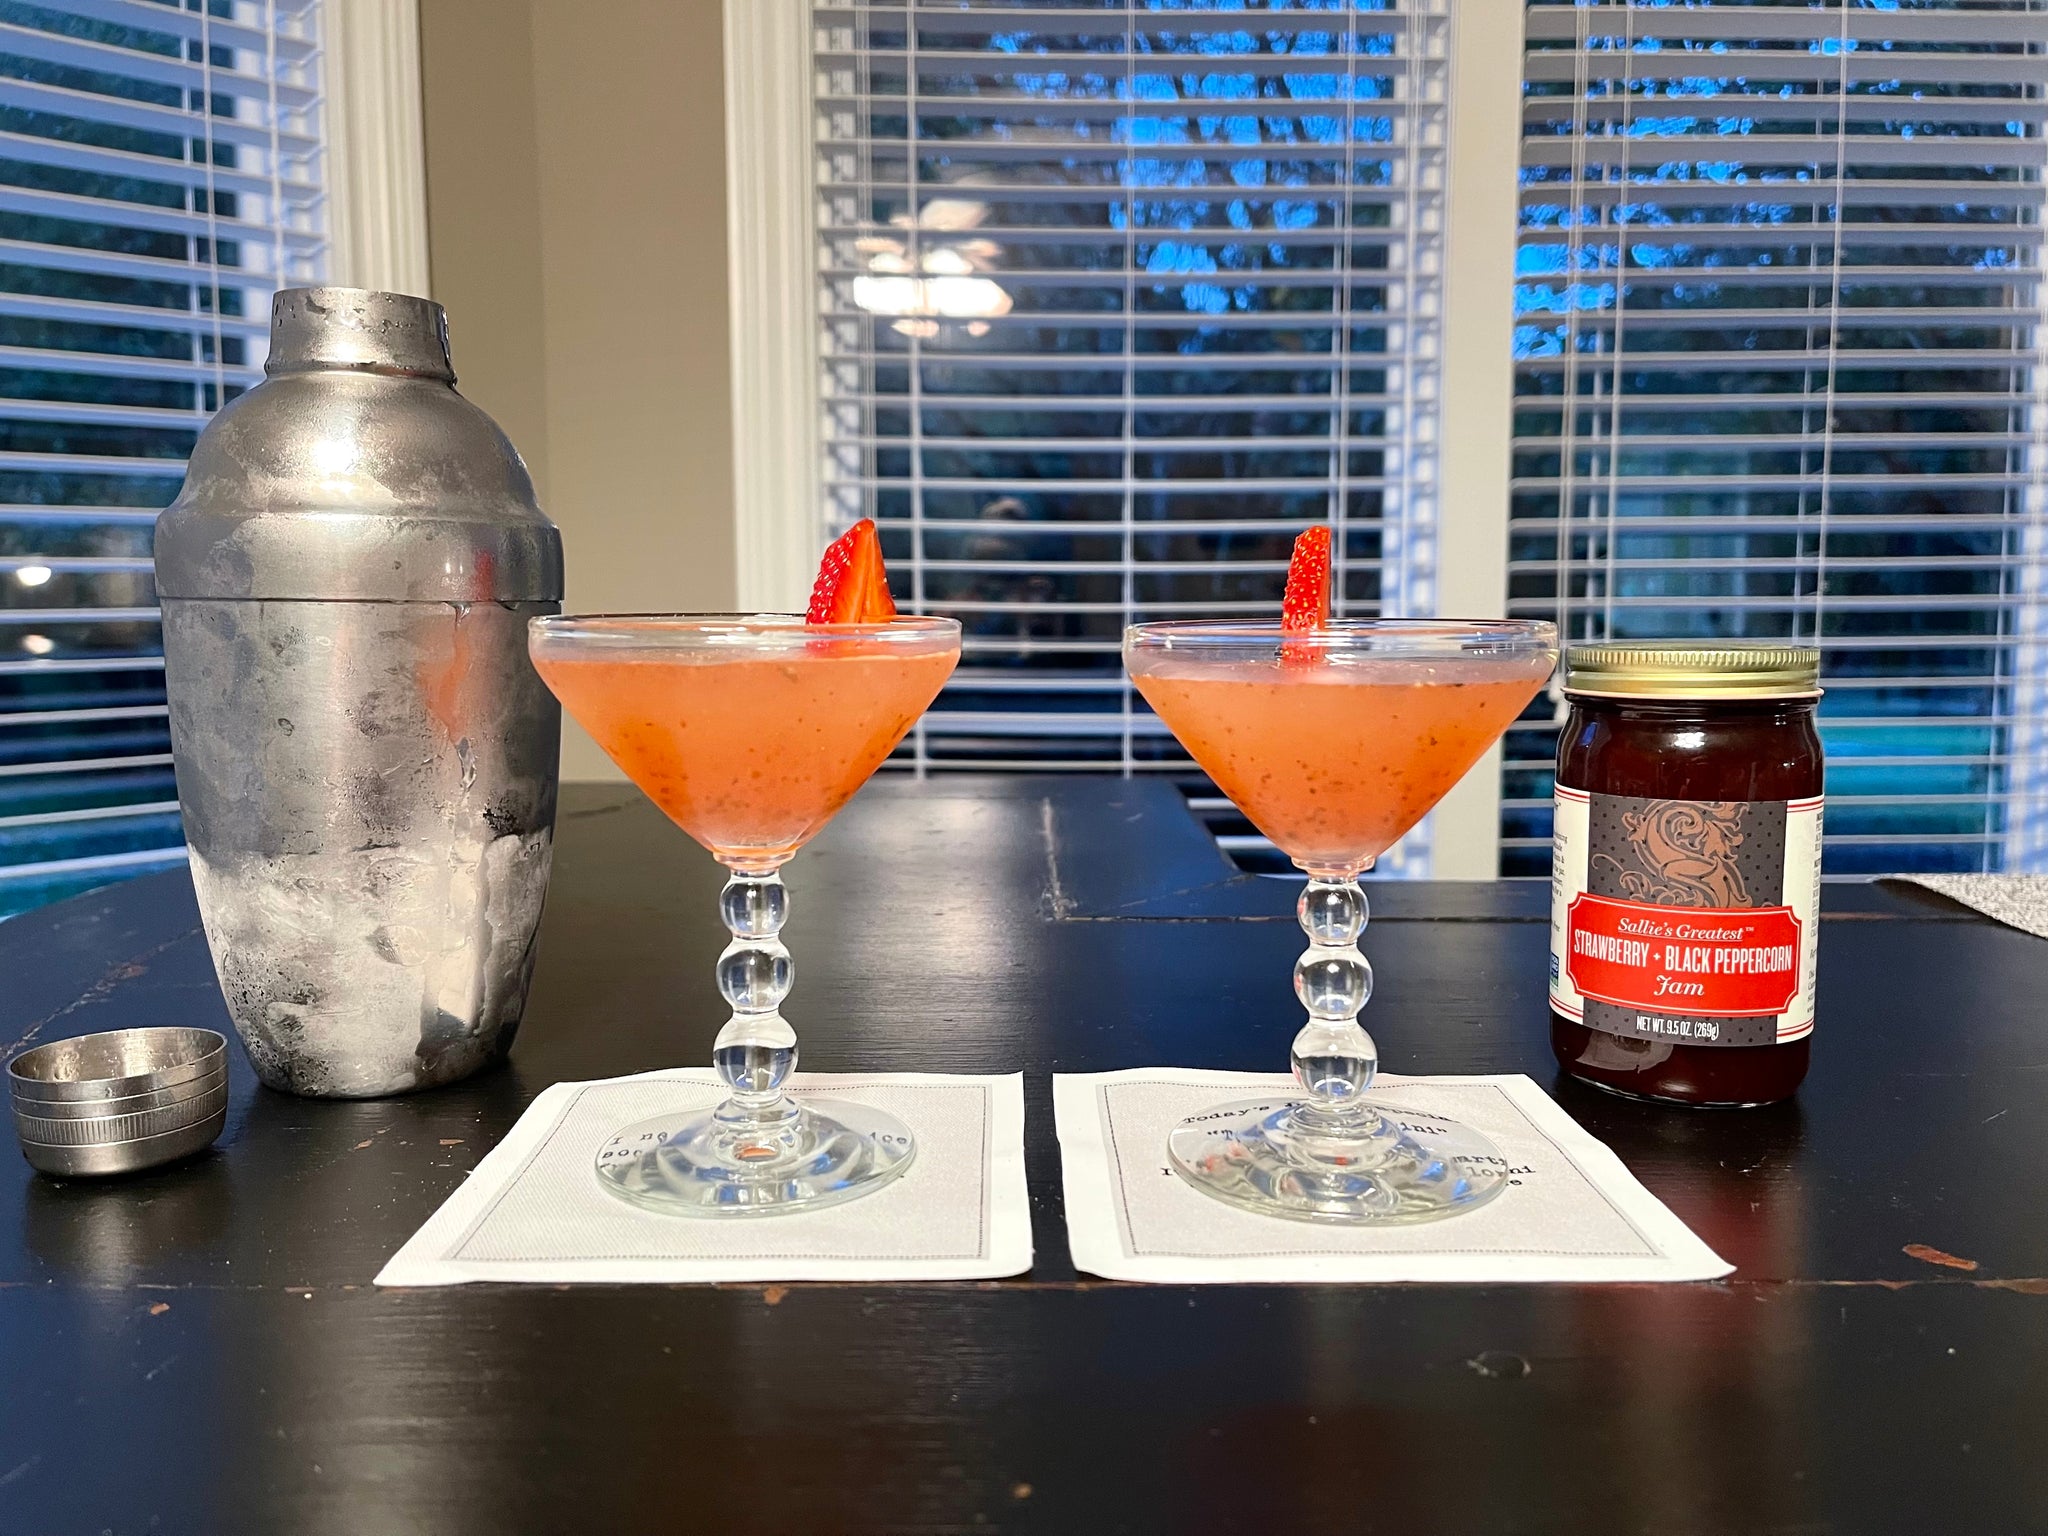 Strawberry + Black Peppercorn Martini